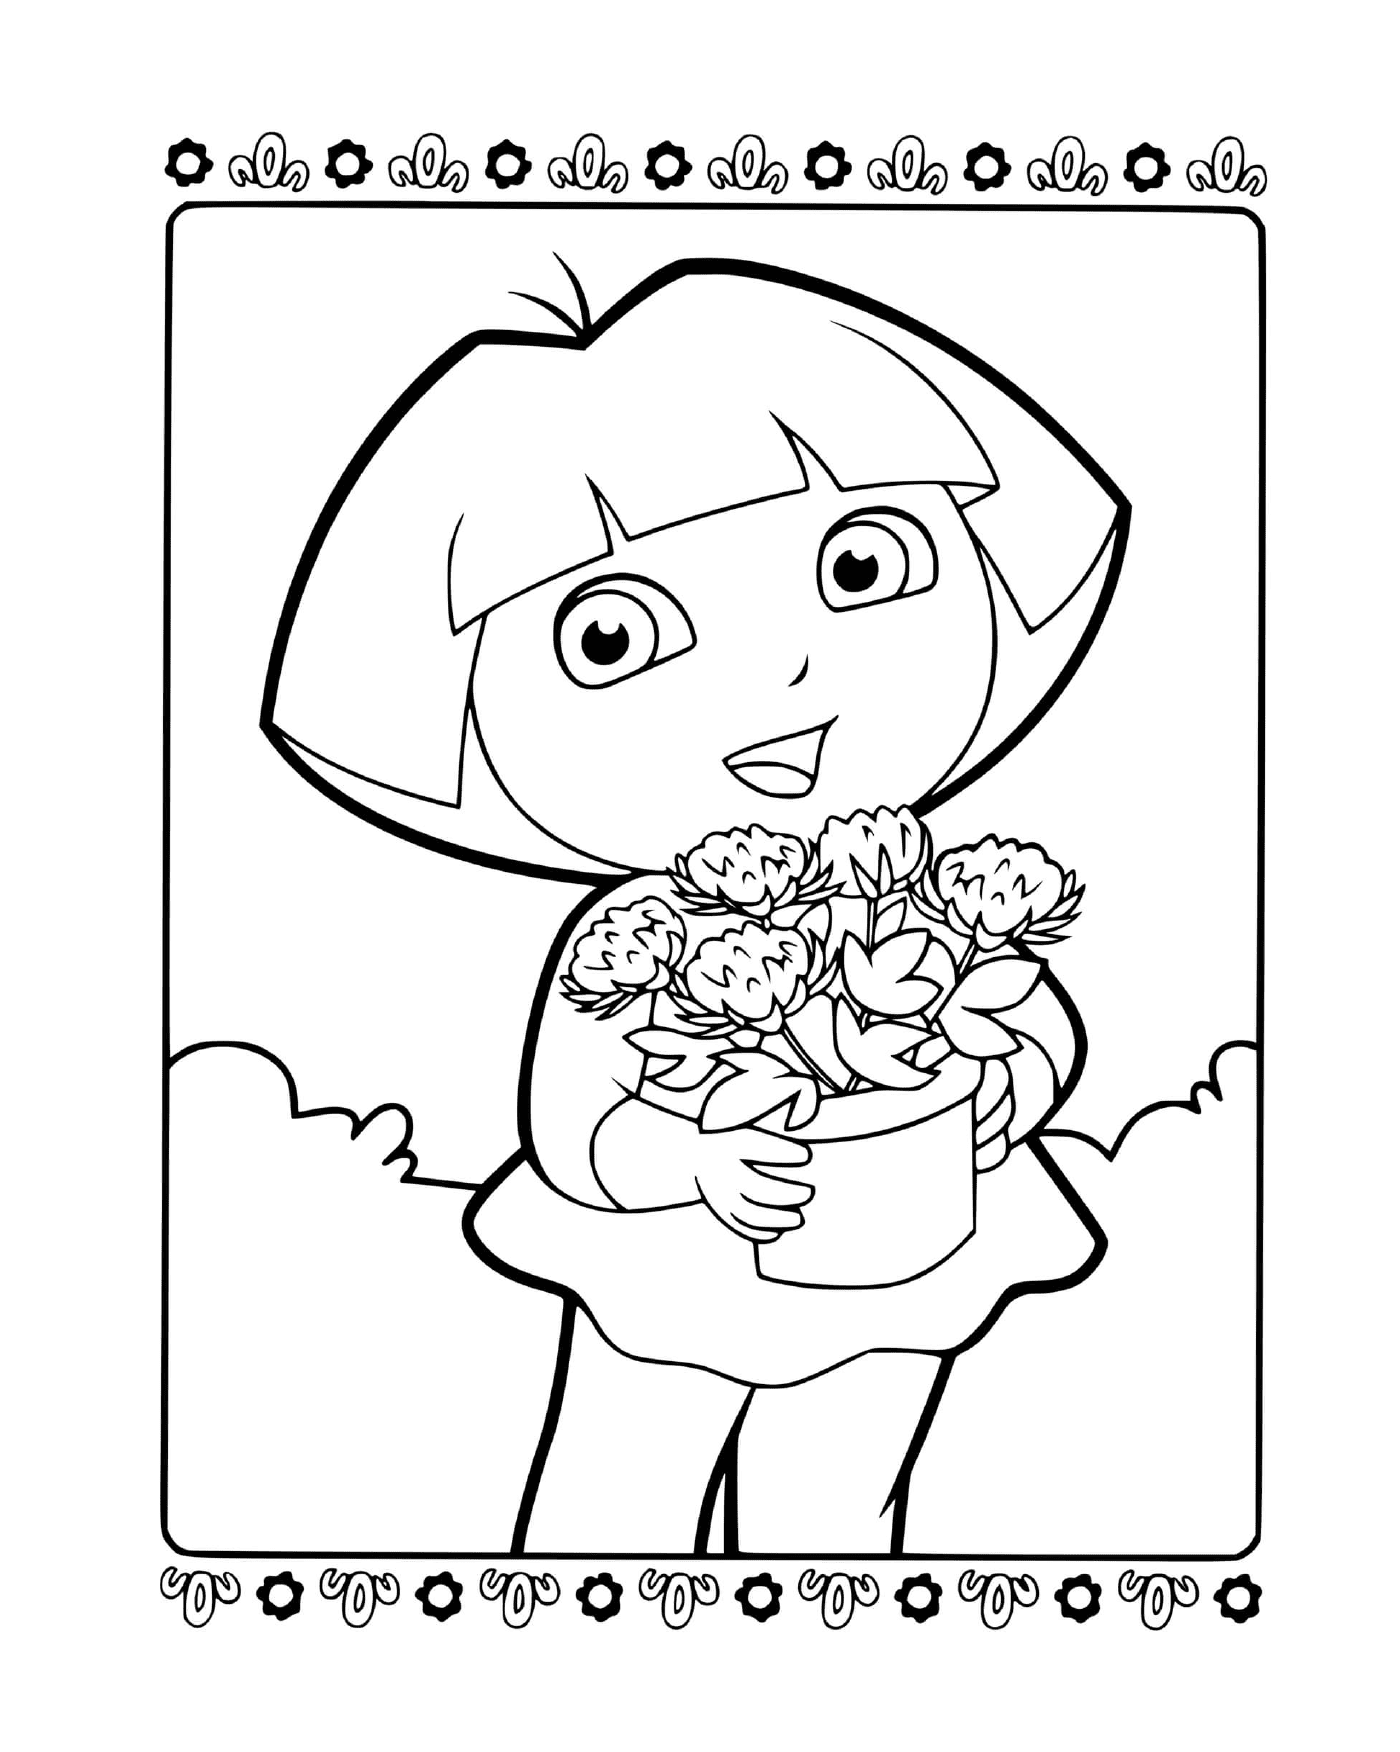  Dora si dona al suo giardinaggio preferito 